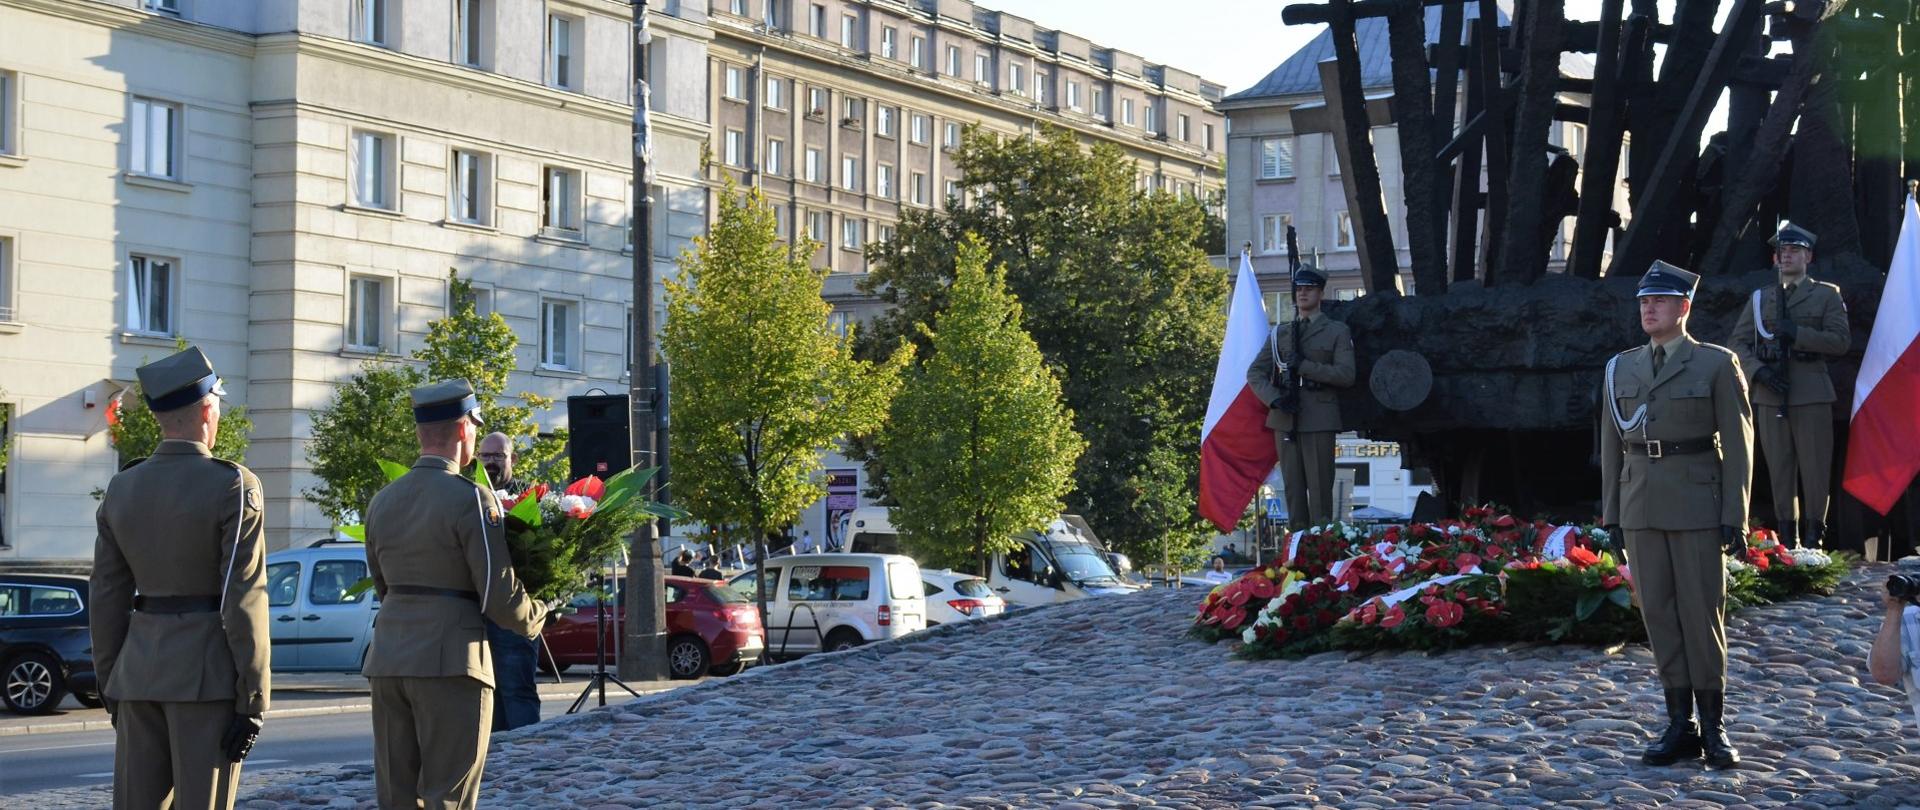 Pamięć o ofiarach sowieckiego ludobójstwa na Polakach z lat 1937-1938
